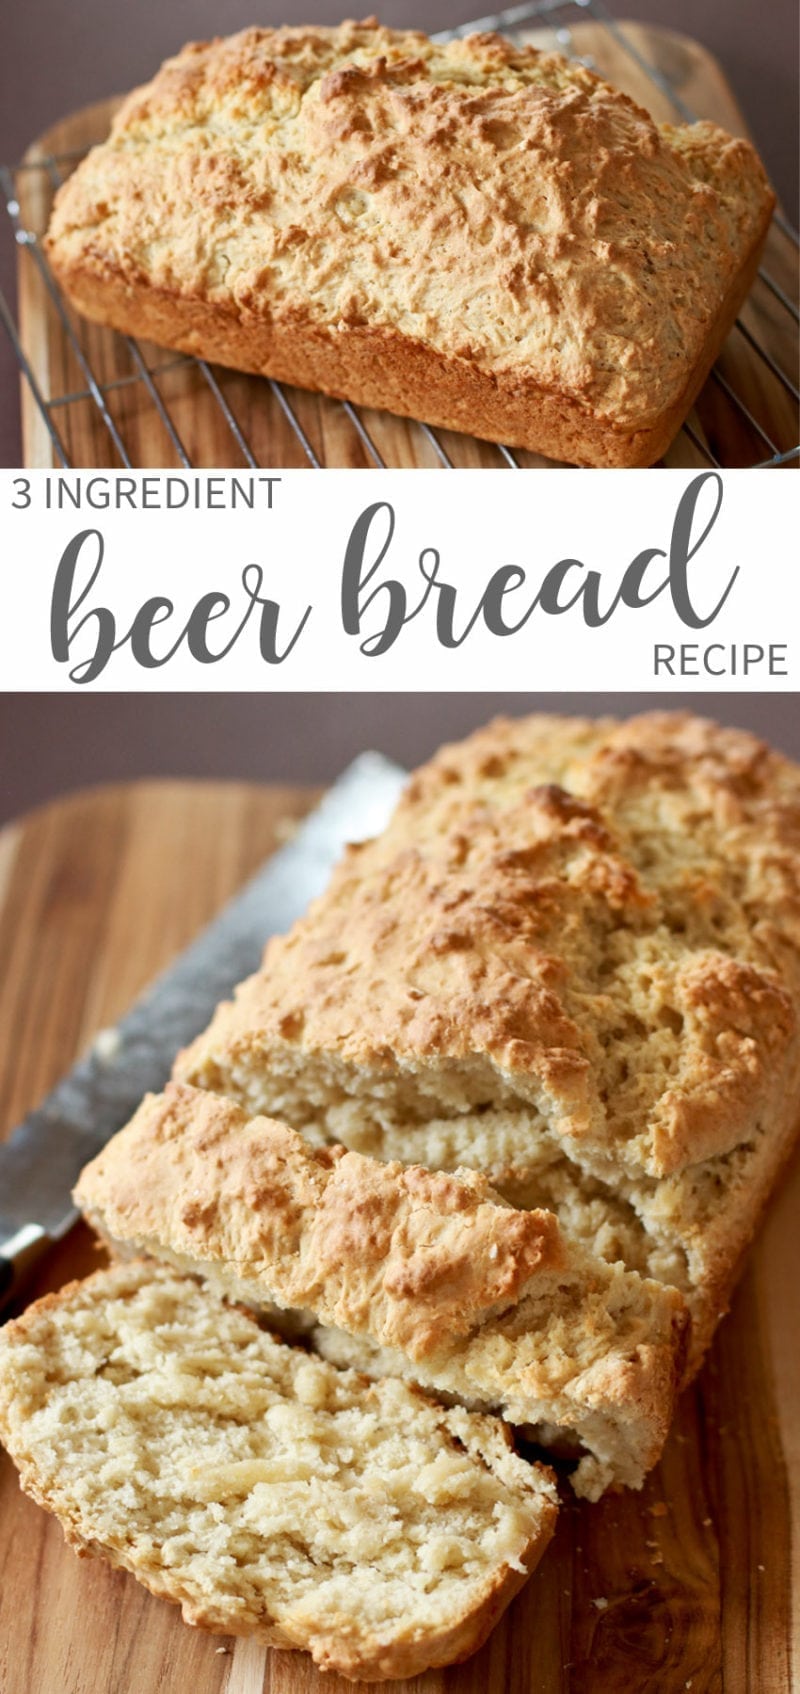 3 Ingredient Easy Beer Bread Recipe